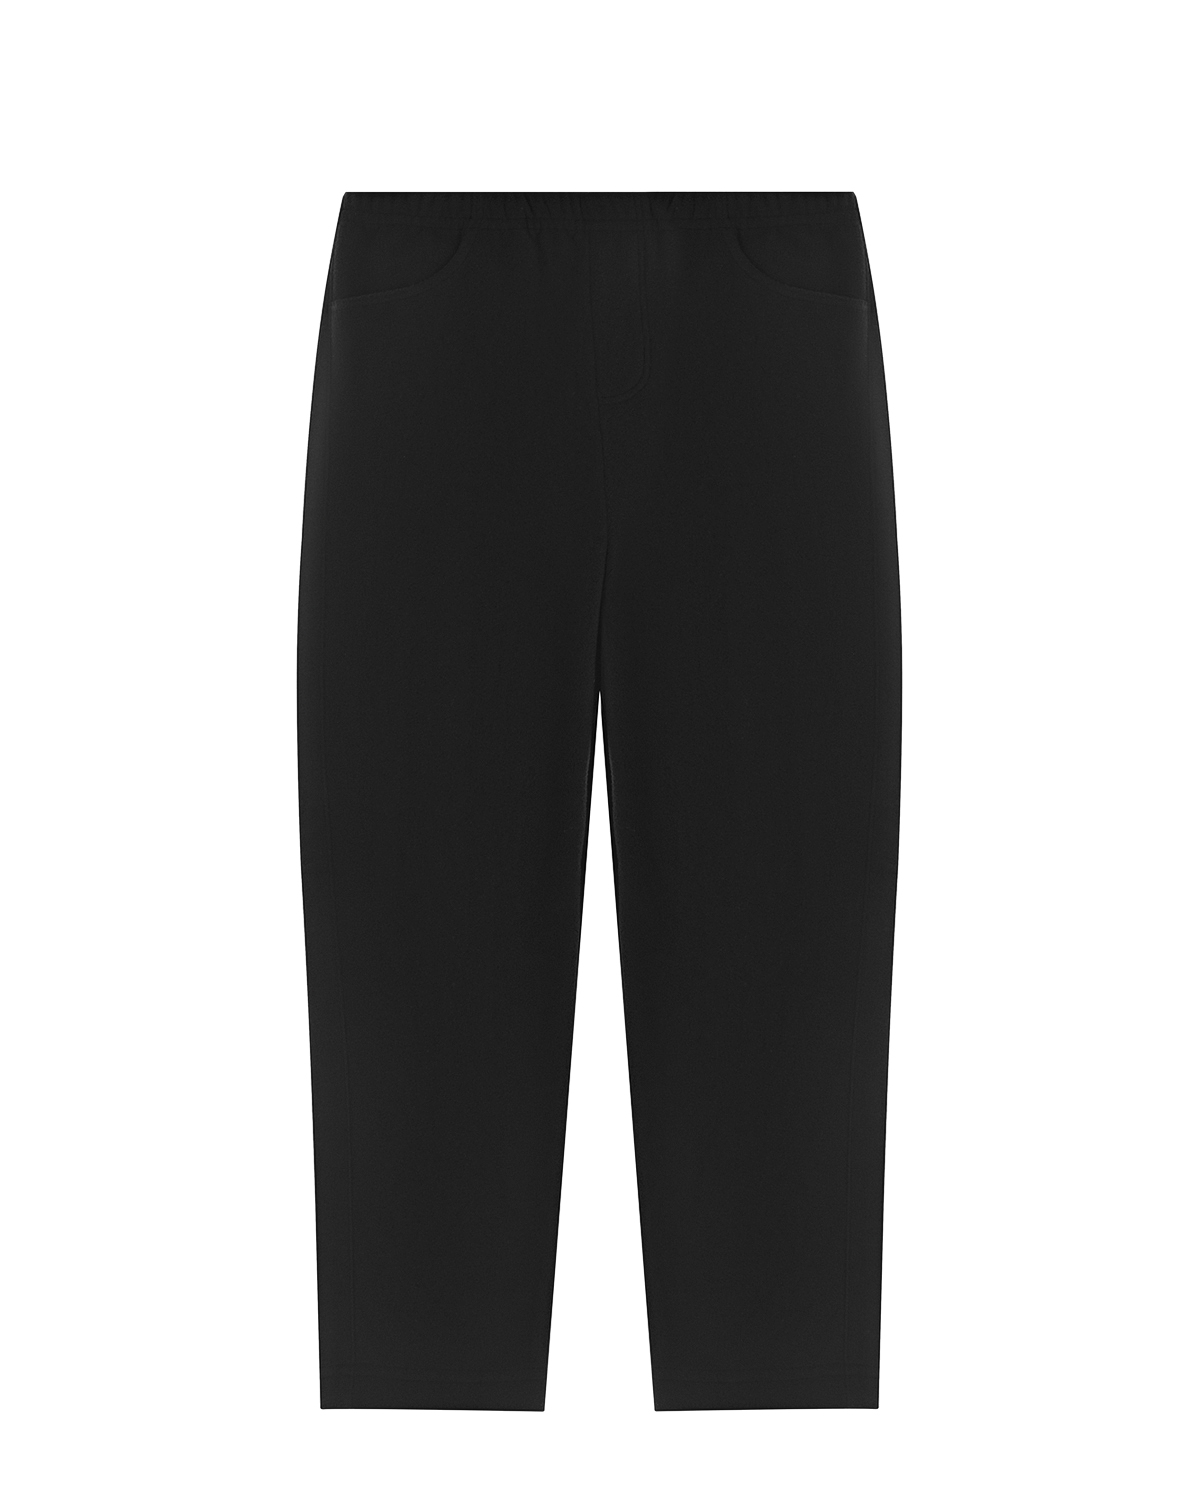 Черные флисовые брюки Poivre Blanc детские, размер 92, цвет черный